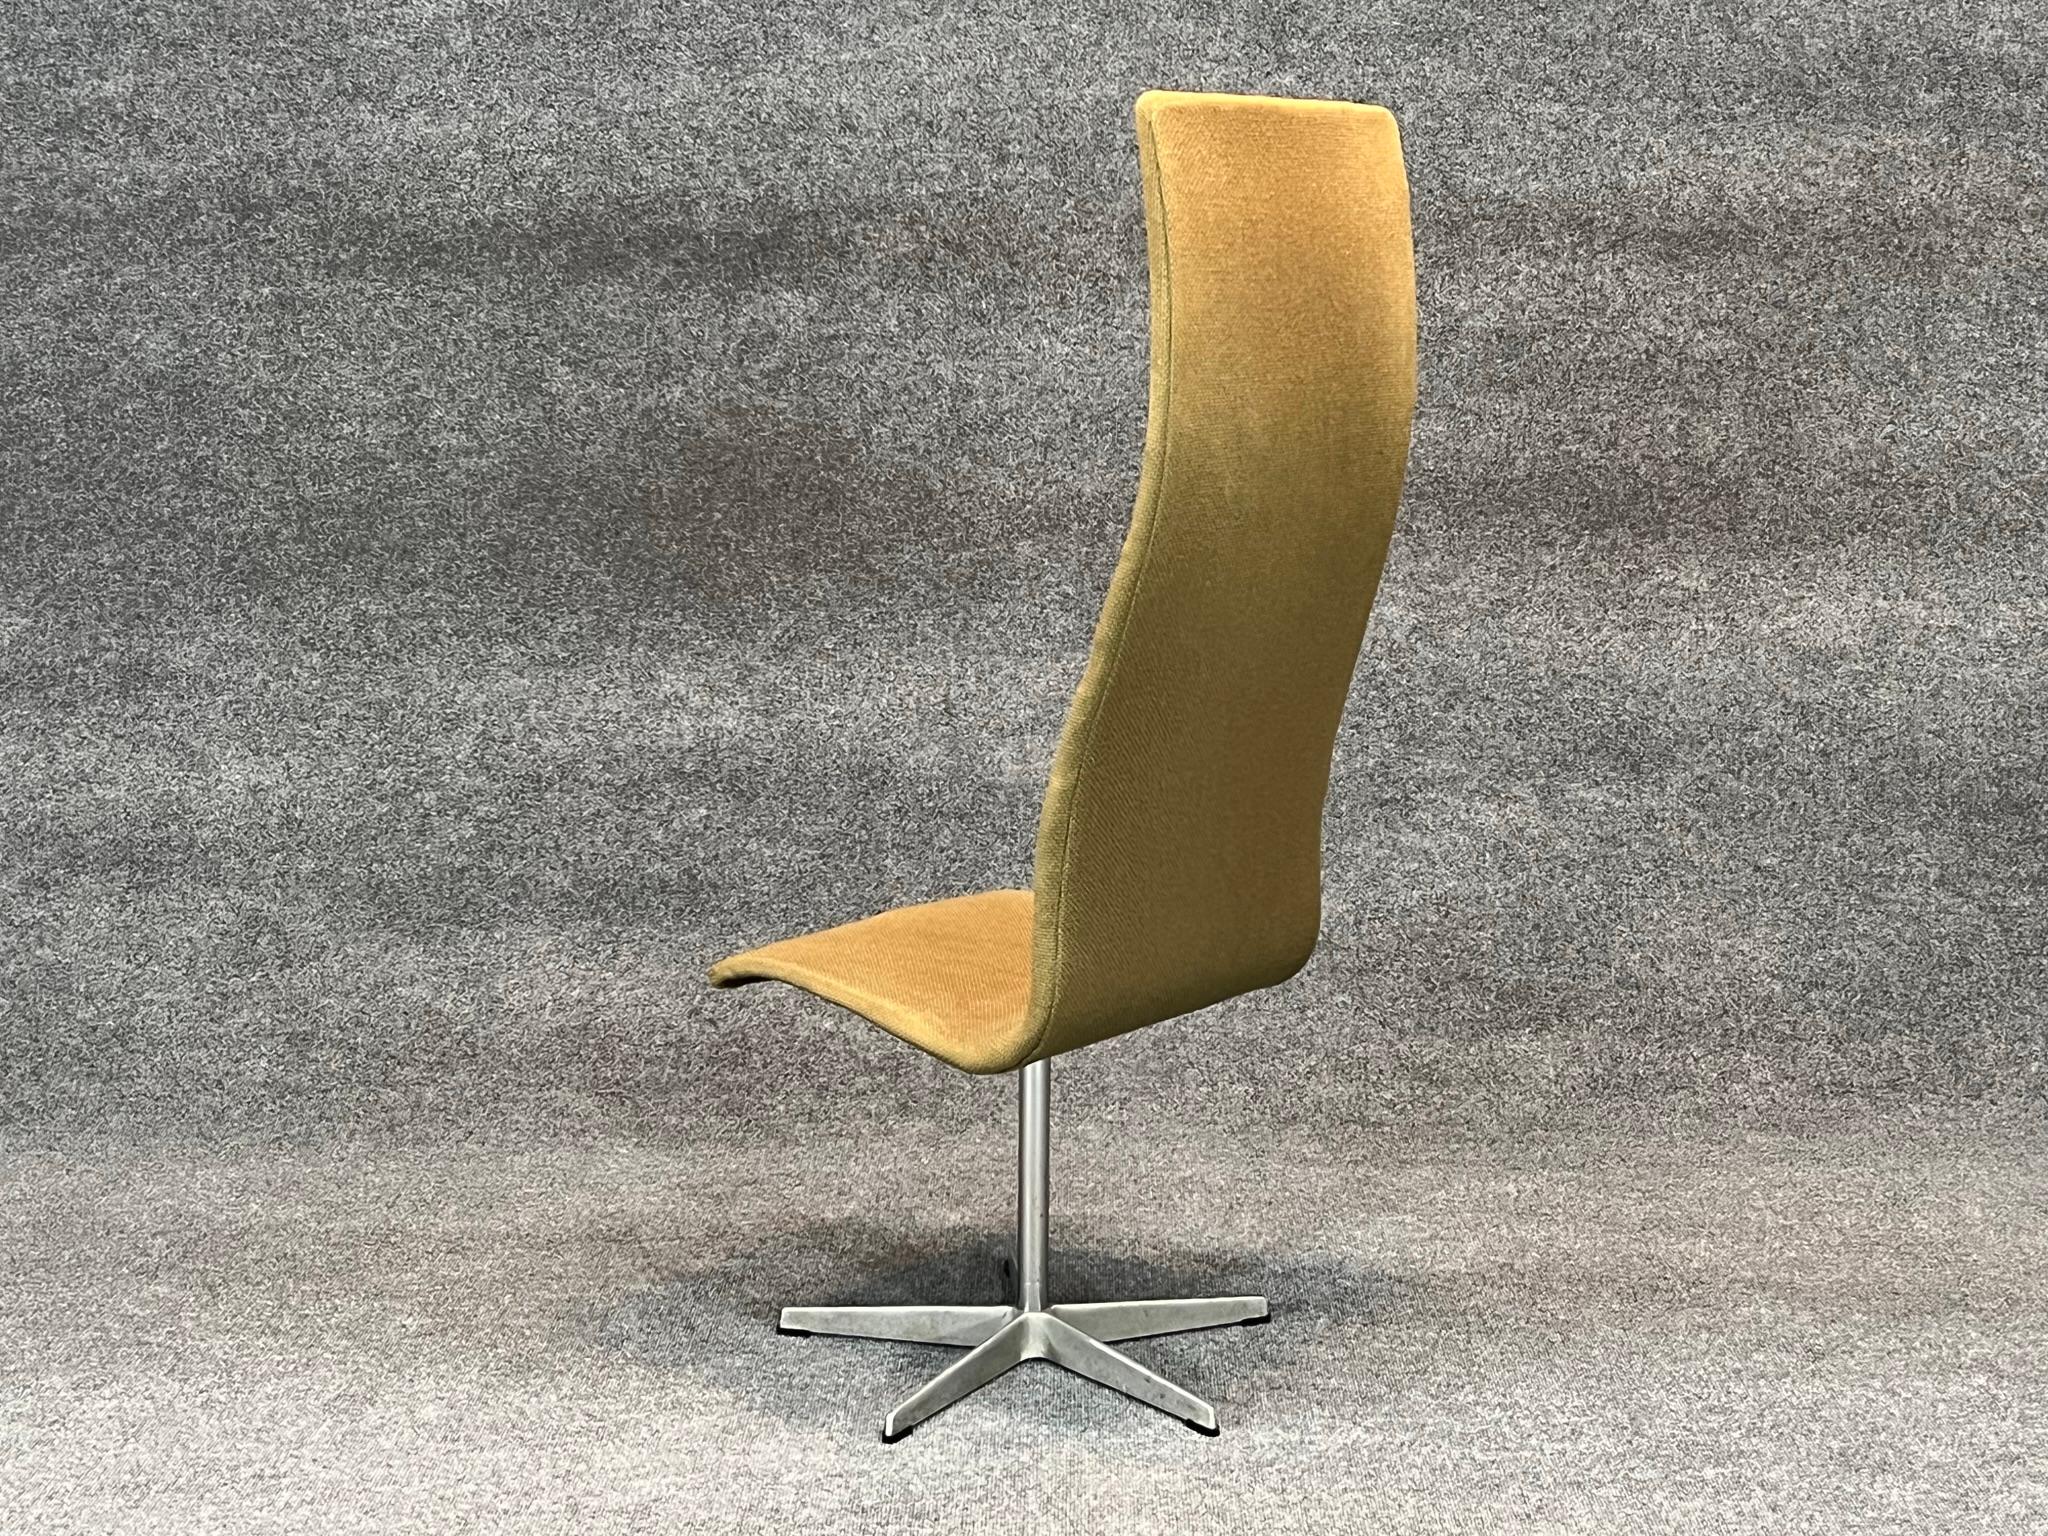 Aluminum Danish Modern High Back Swivel Oxford chair by Arne Jacobsen for Fritz Hansen